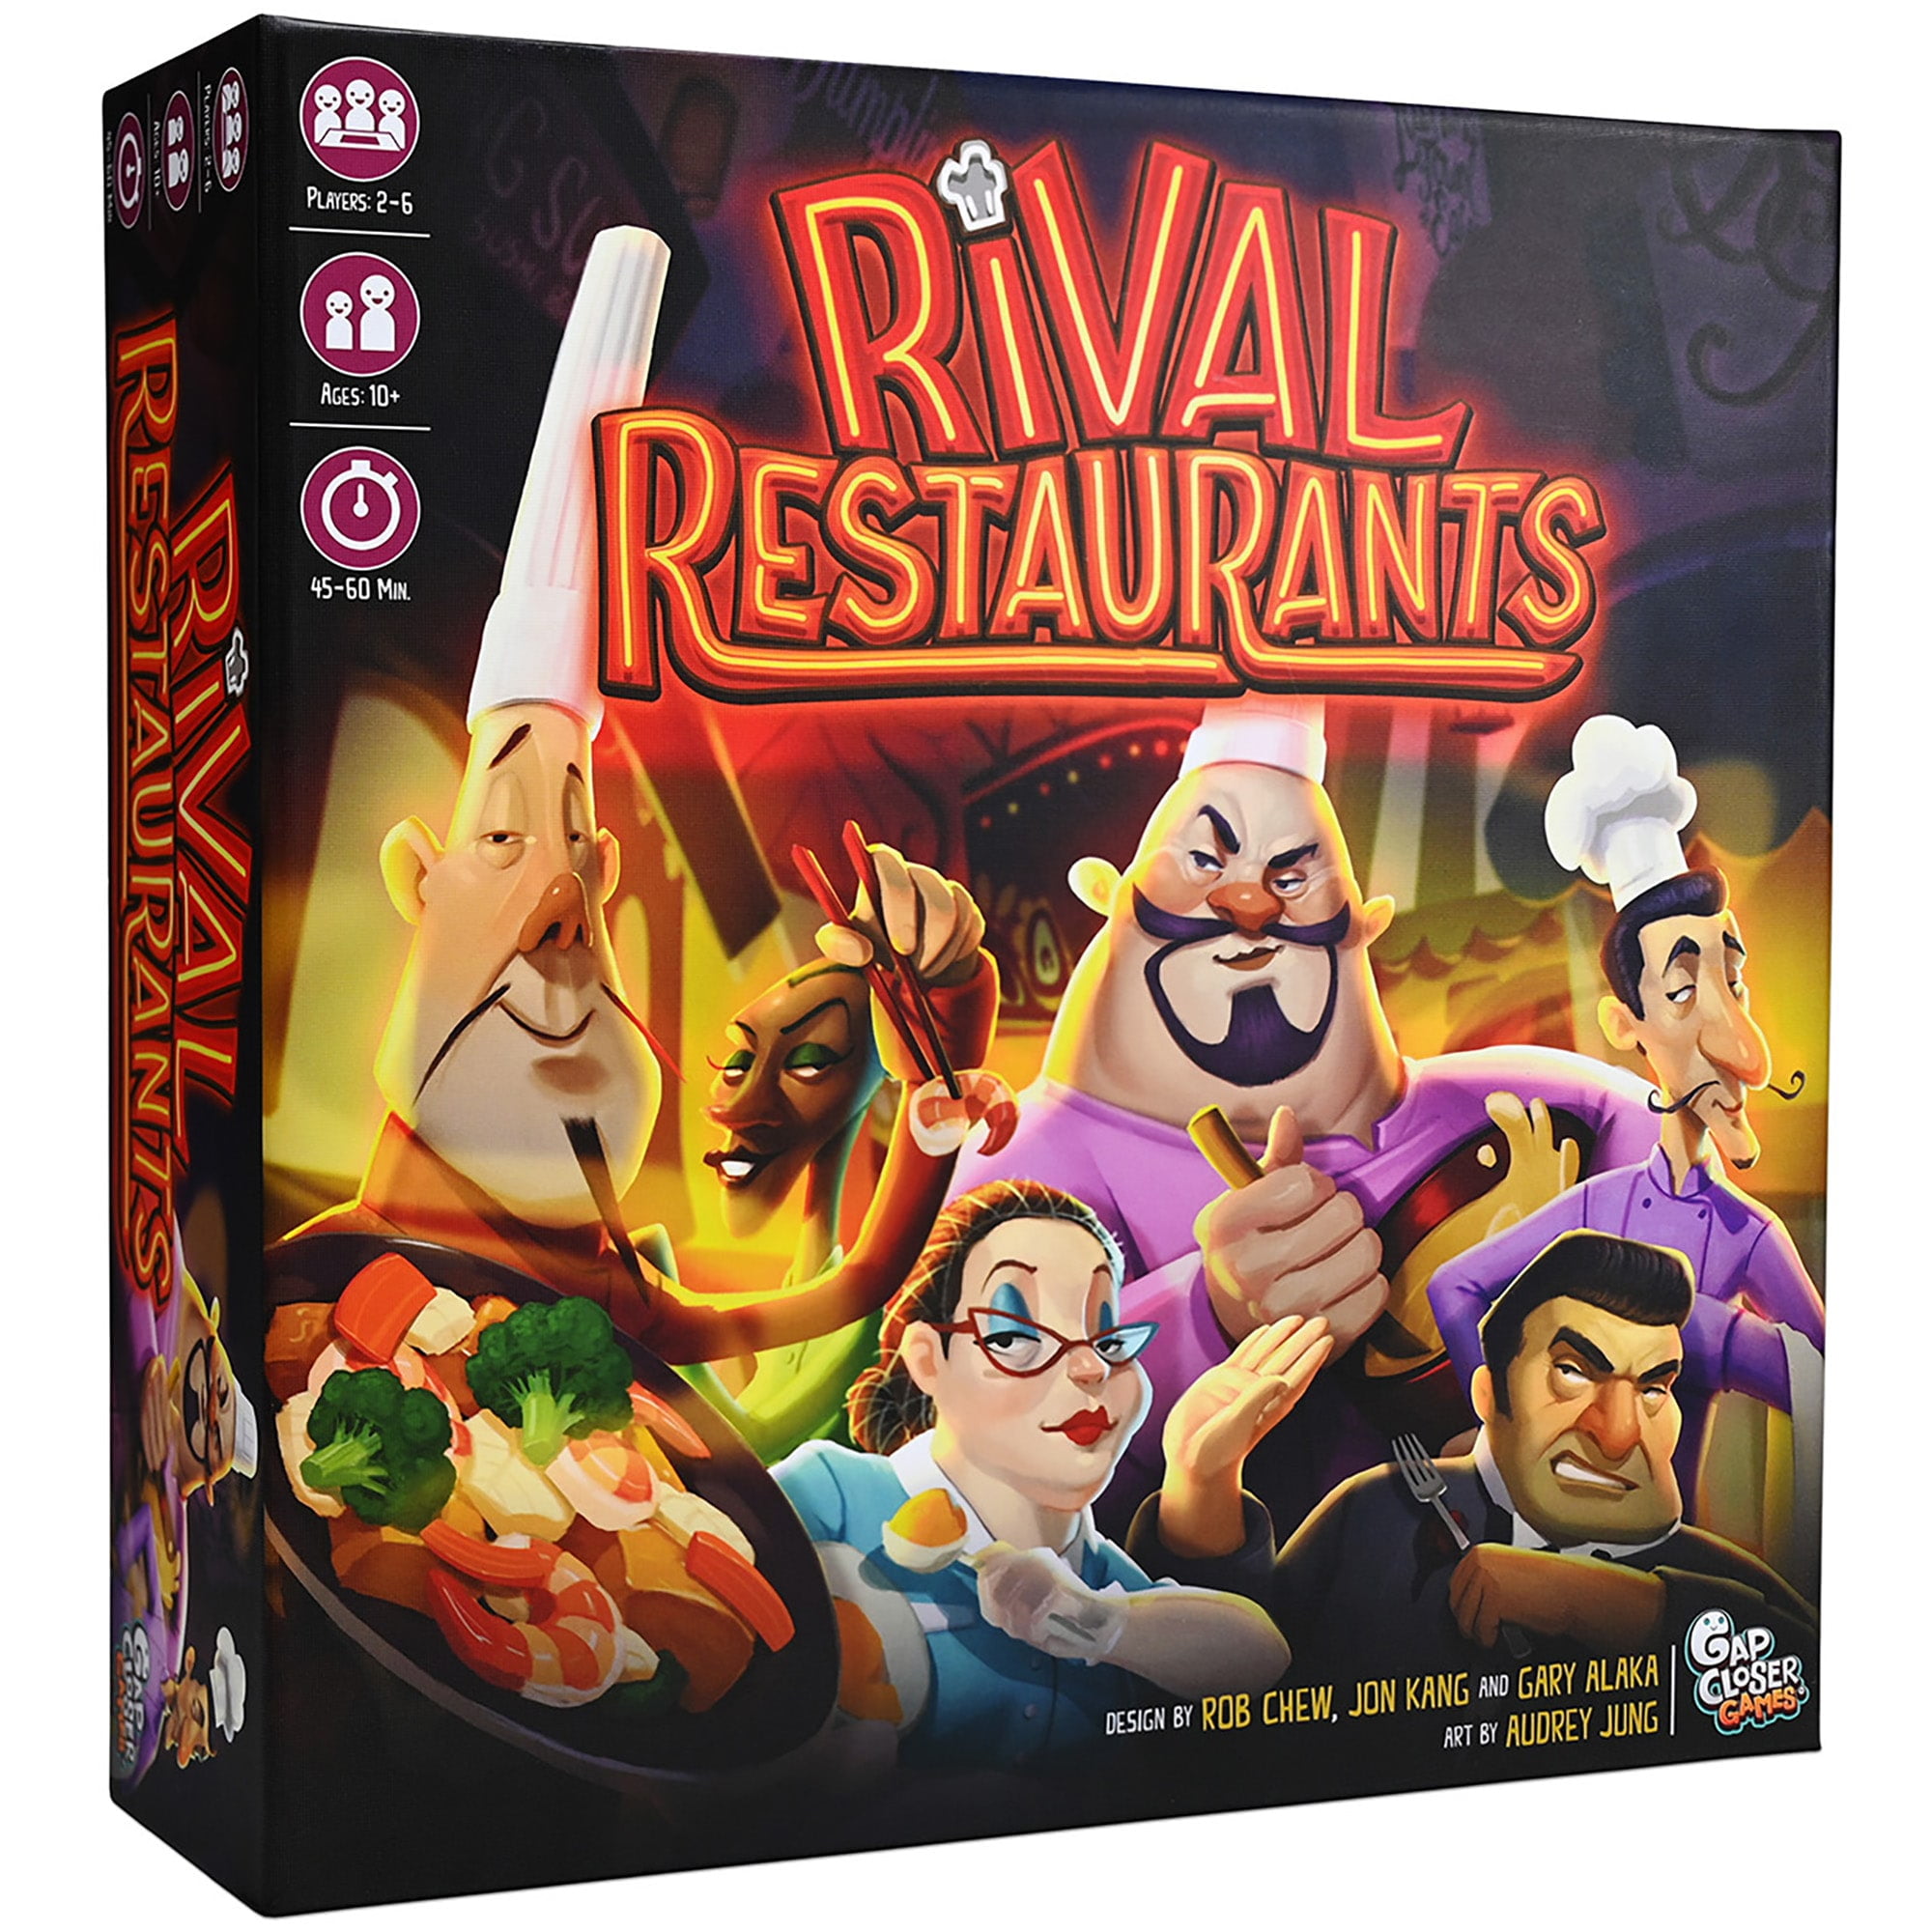 Best Games Where You Run A Restaurant